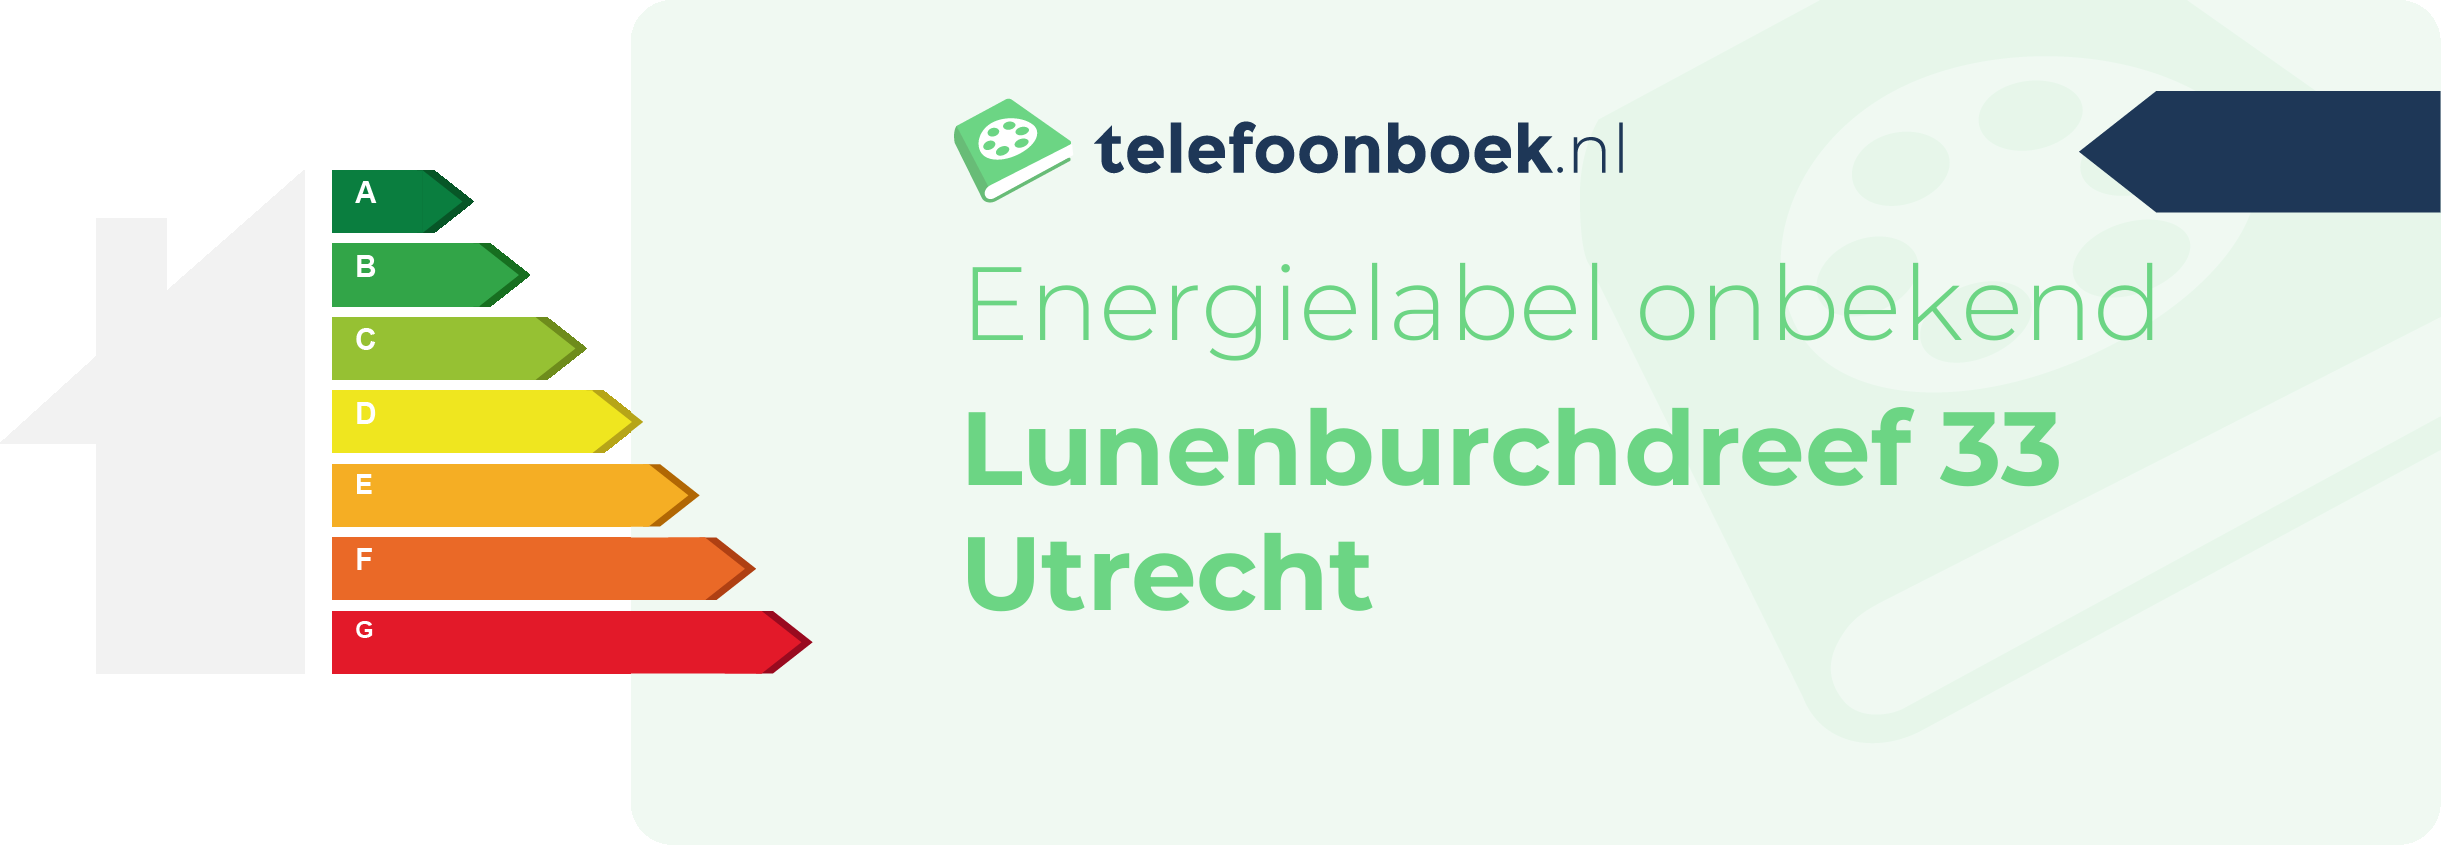 Energielabel Lunenburchdreef 33 Utrecht